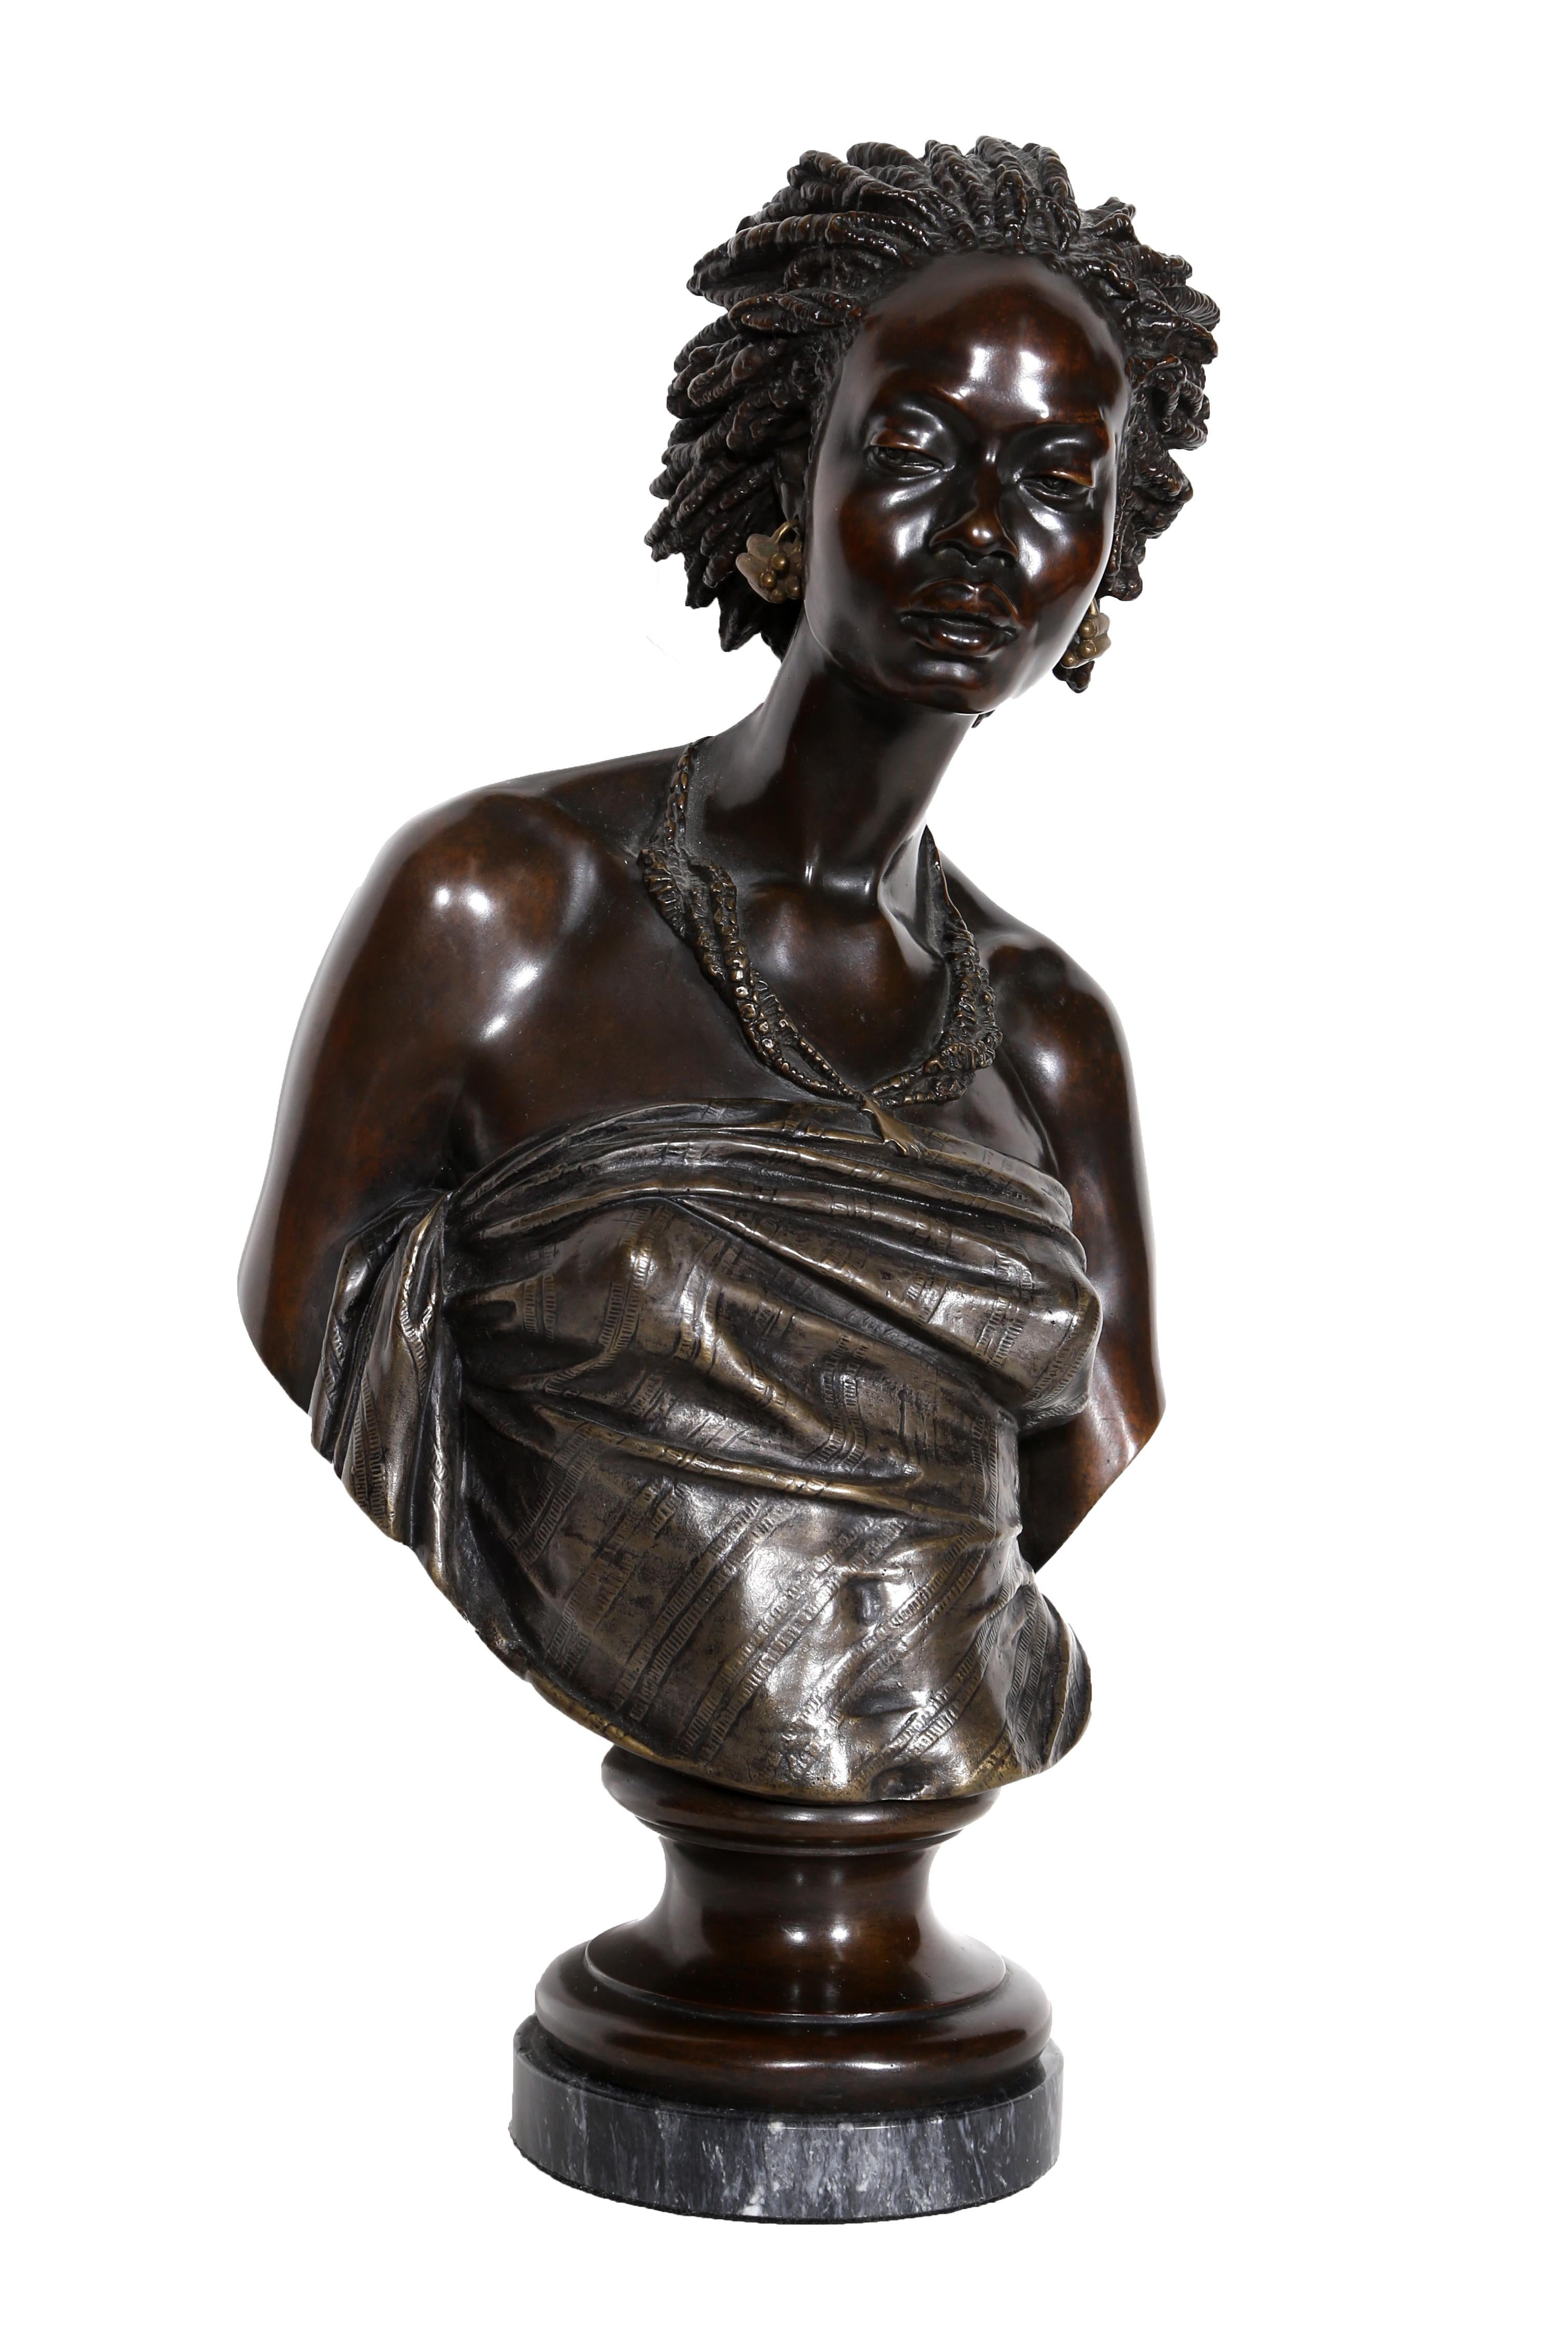 Venus Africaine von Charles Cordier, Franzose (1827-1905)
Bronzeskulptur, Signatur beschriftet
Größe: 15 x 9 x 5 Zoll (38,1 x 22,86 x 12,7 cm)